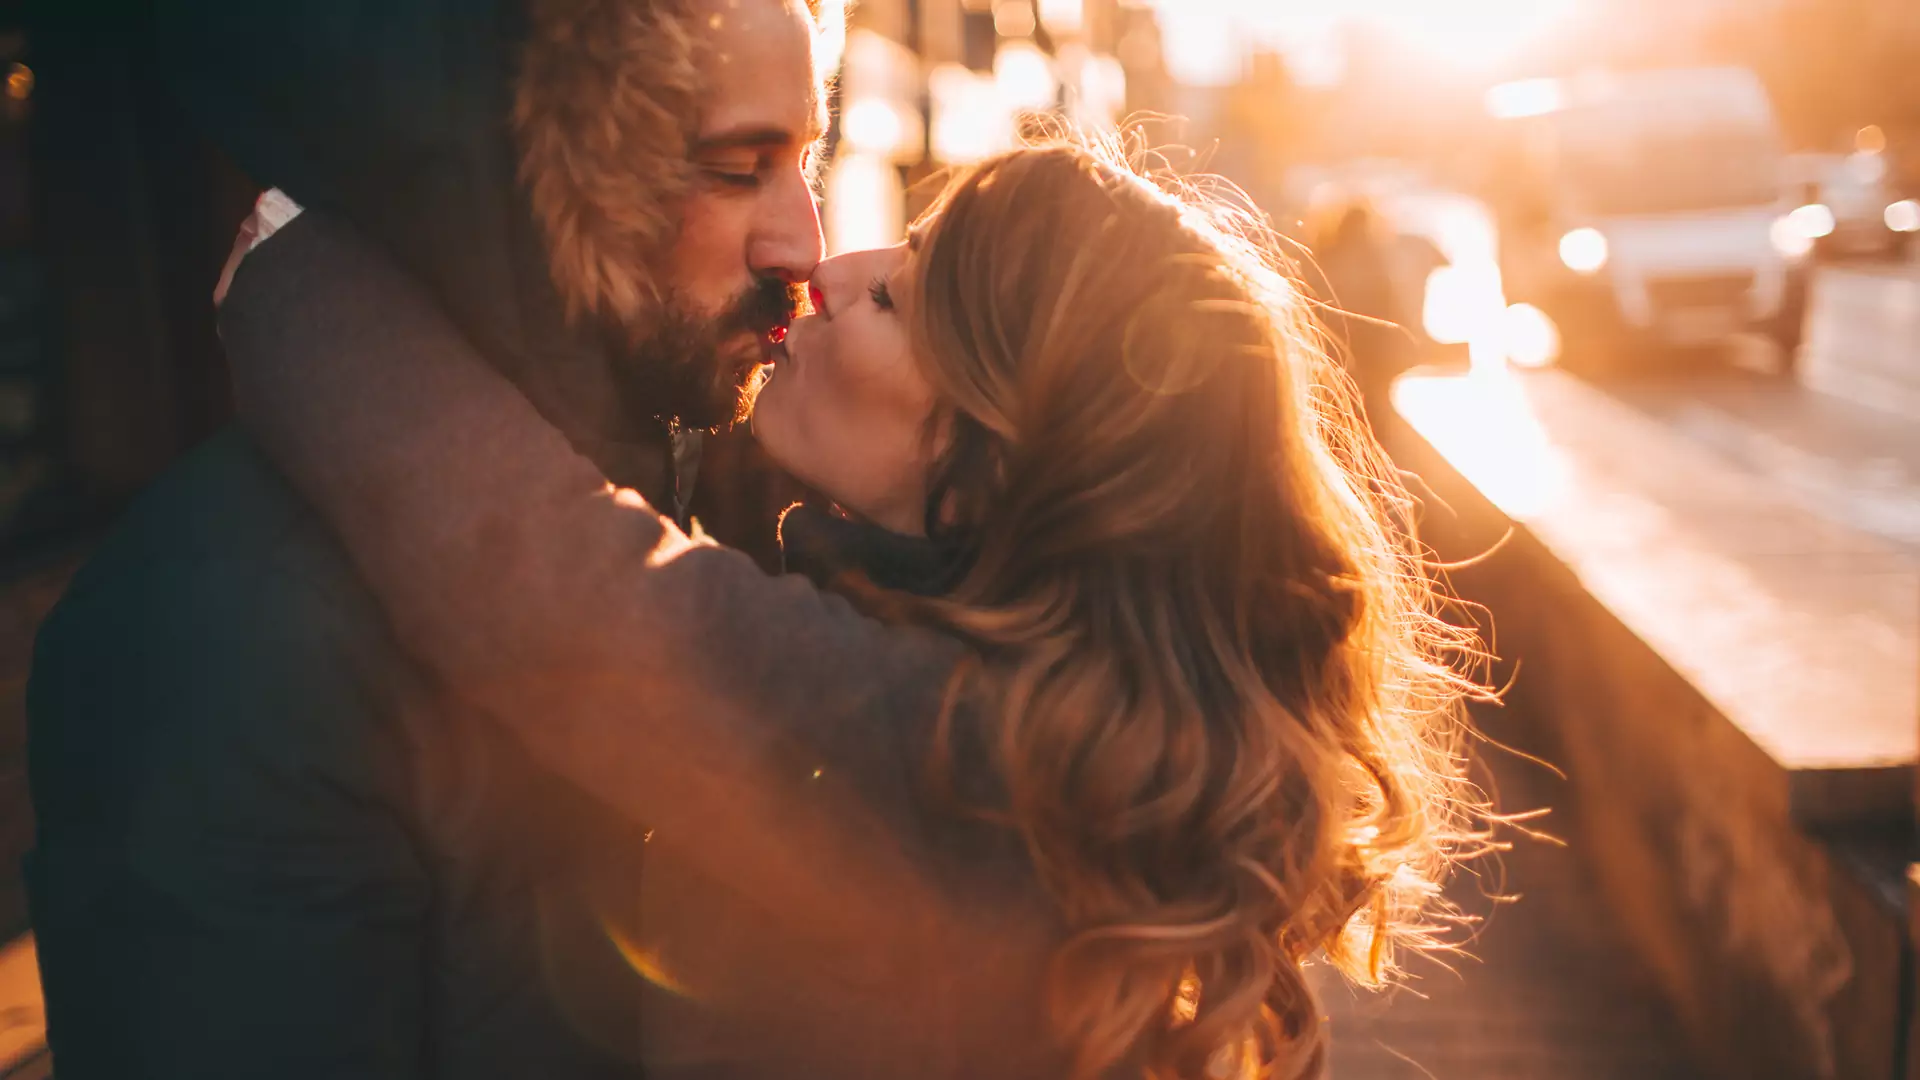 15 rzeczy, które nie powinny mieć miejsca w zdrowym związku